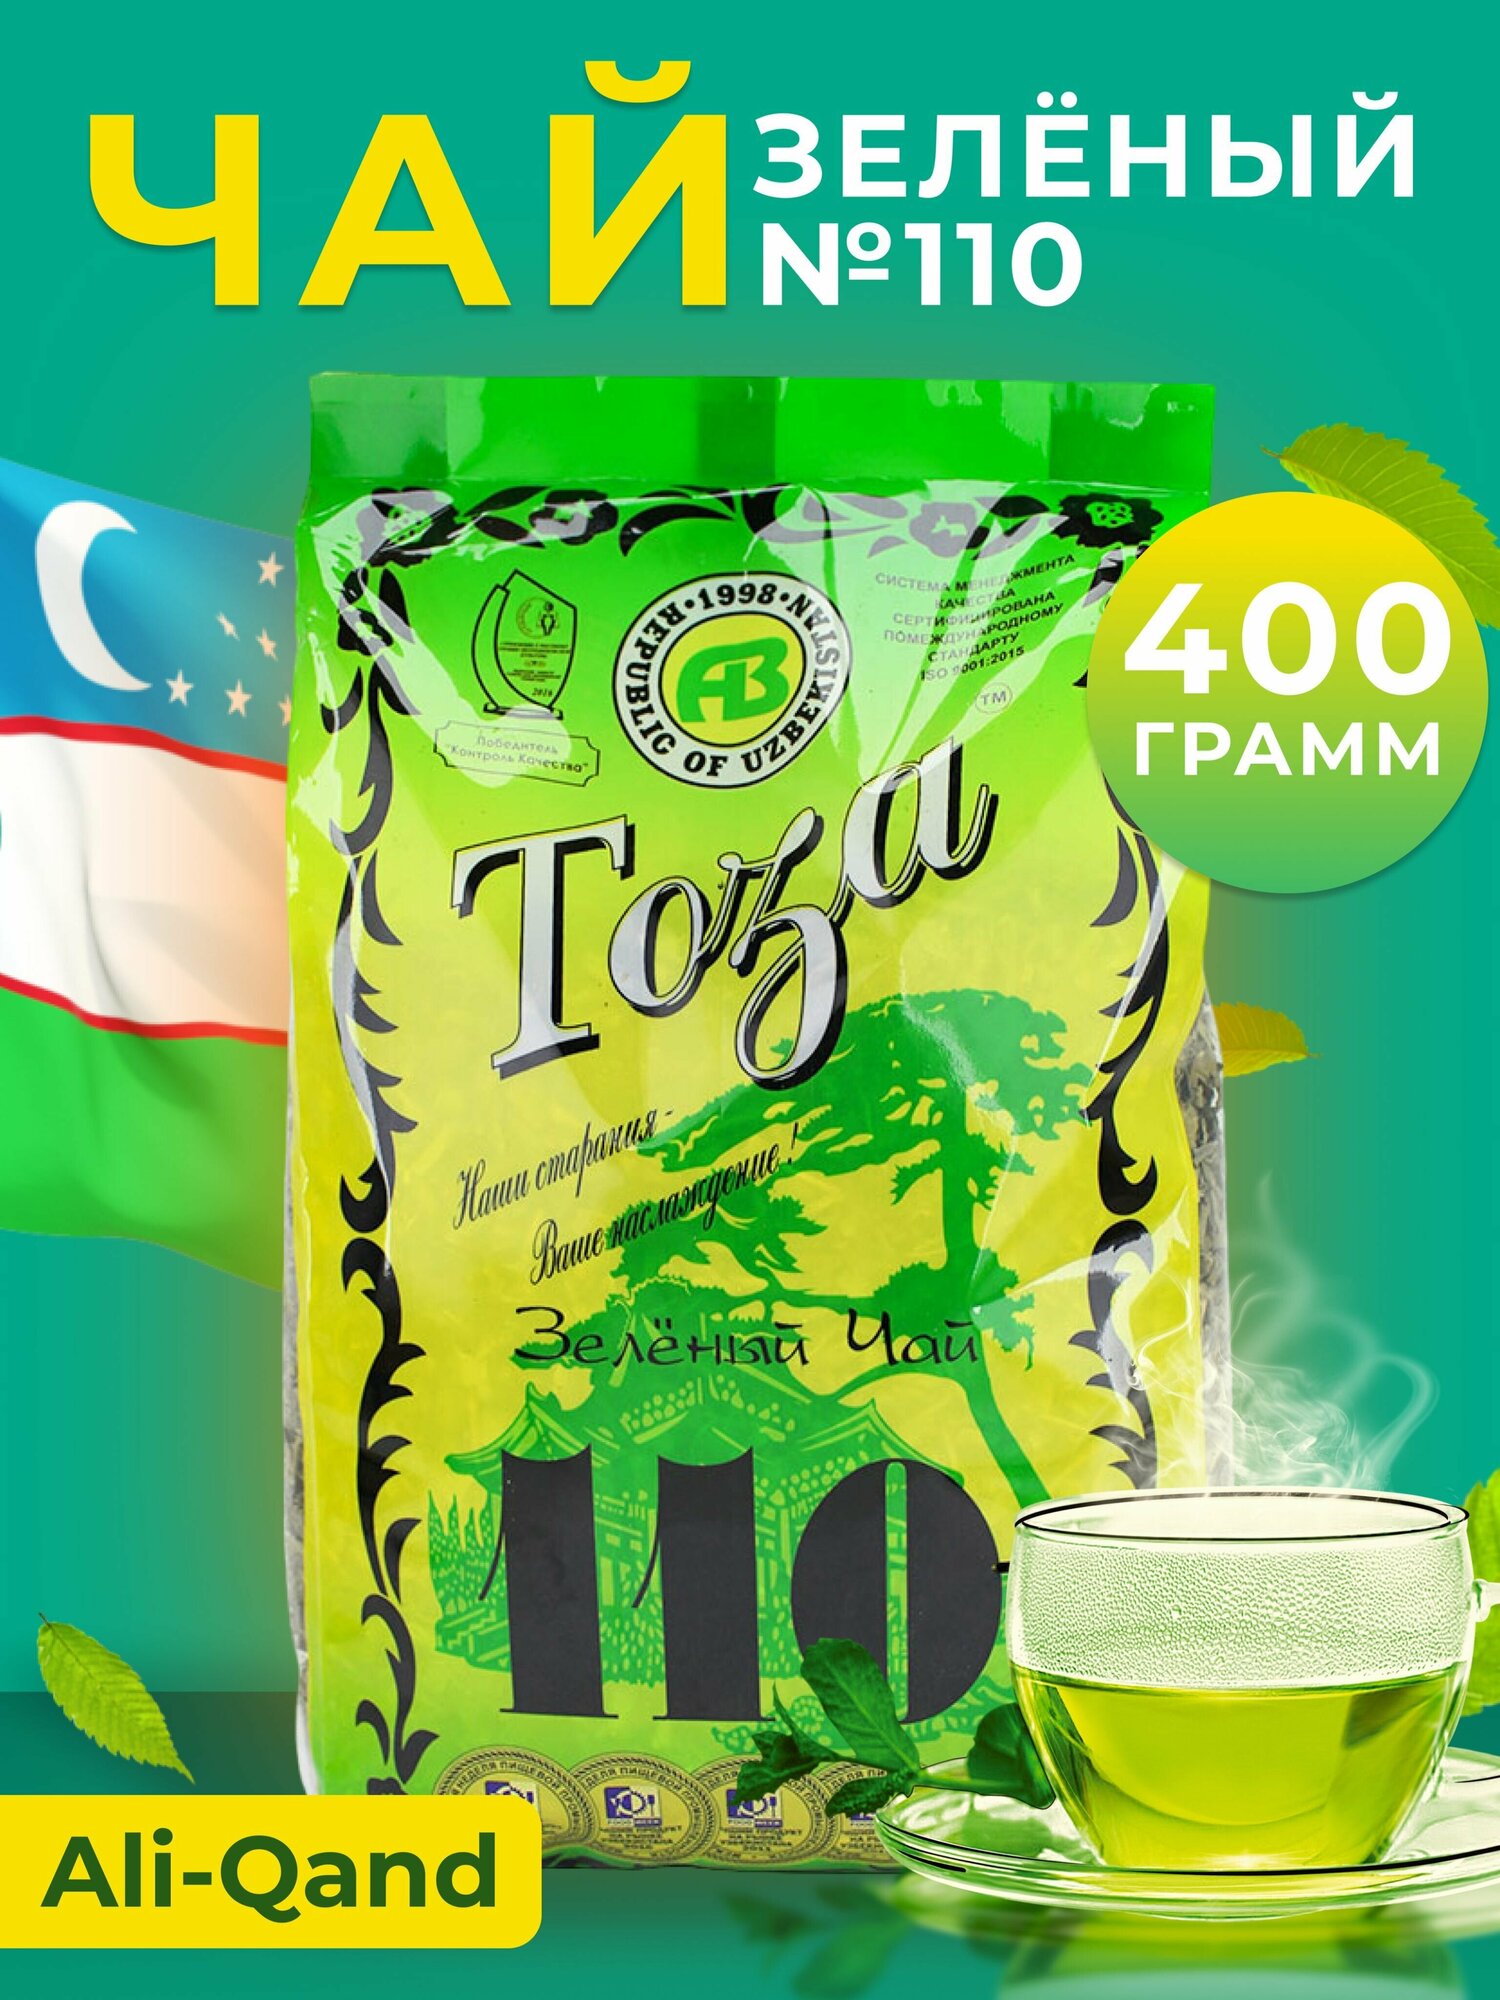 Чай зеленый Тоза Узбекский № 110 листовой, 400 г - фотография № 11